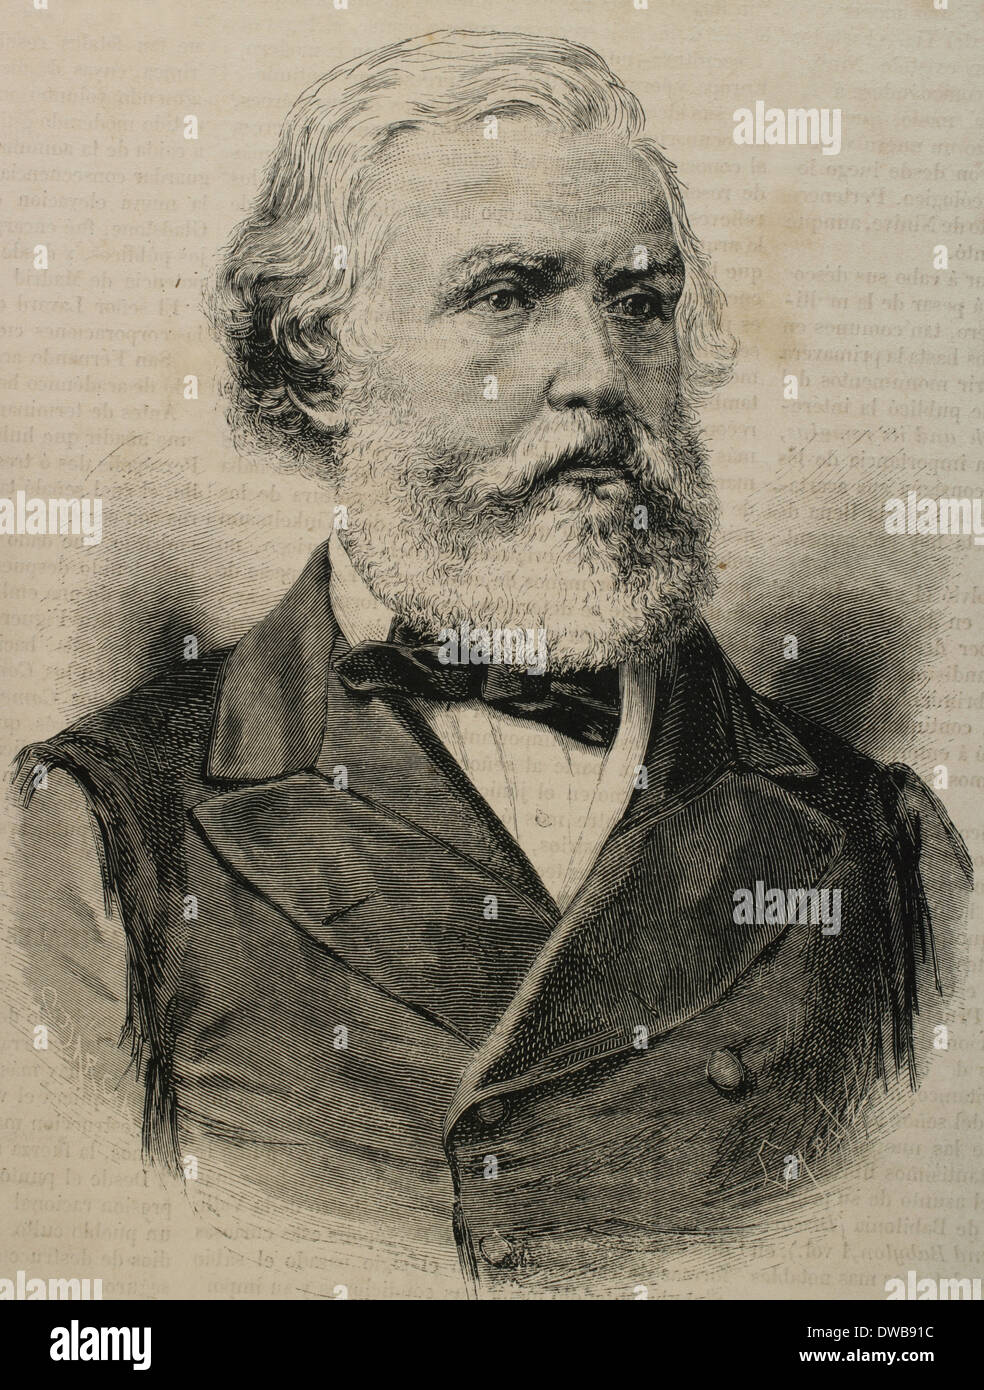 Austen Henry Layard (1817-1894). Englischer Archäologe. Am besten bekannt als der Bagger von Nimrud und Ninive. Gravur. Stockfoto